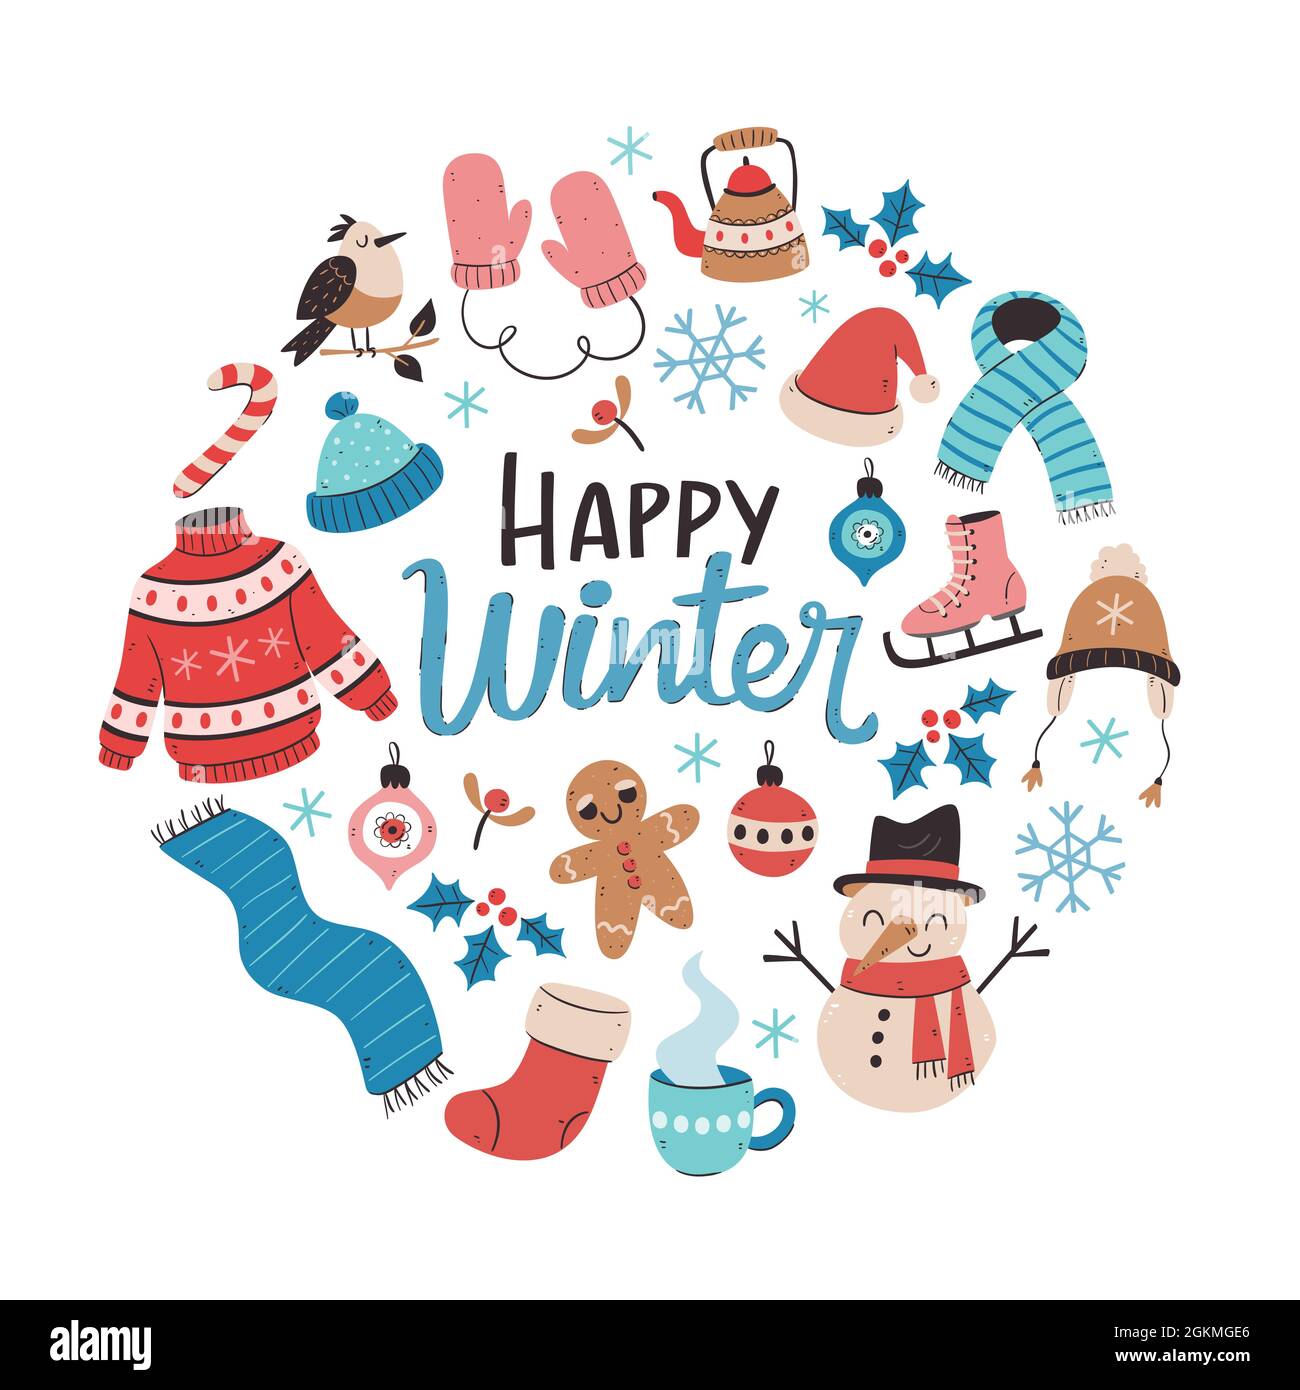 Carta invernale disegnata a mano con elementi invernali. Abbigliamento invernale, pupazzo di neve, uccelli, foglie e decorazioni natalizie. Illustrazione vettoriale colorata con isolat Illustrazione Vettoriale